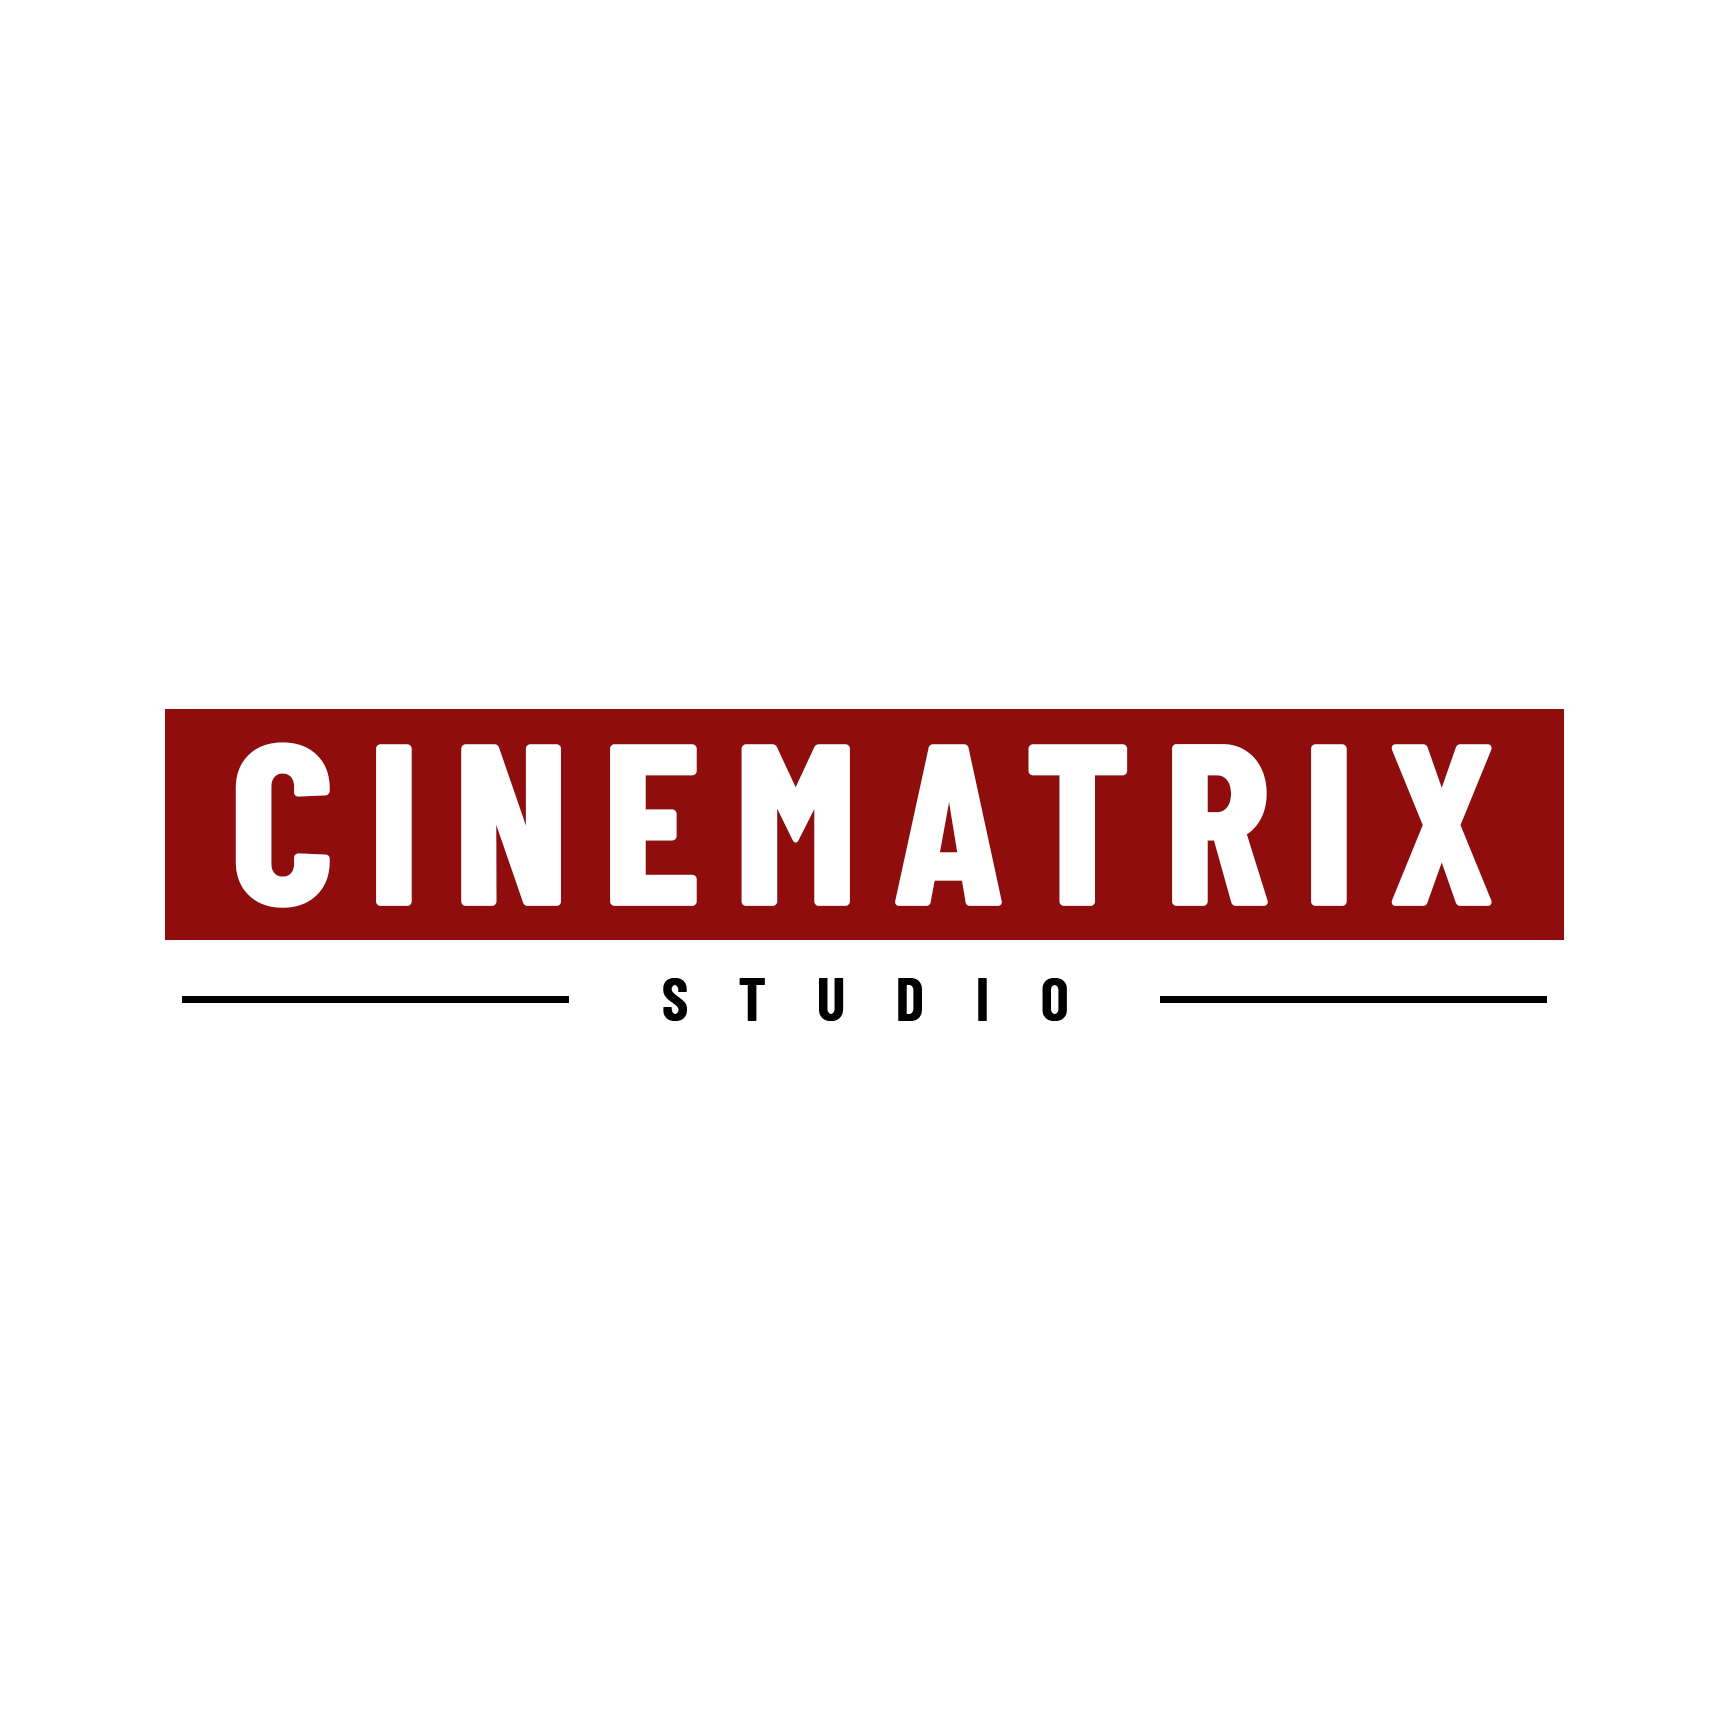 cinematrix studio